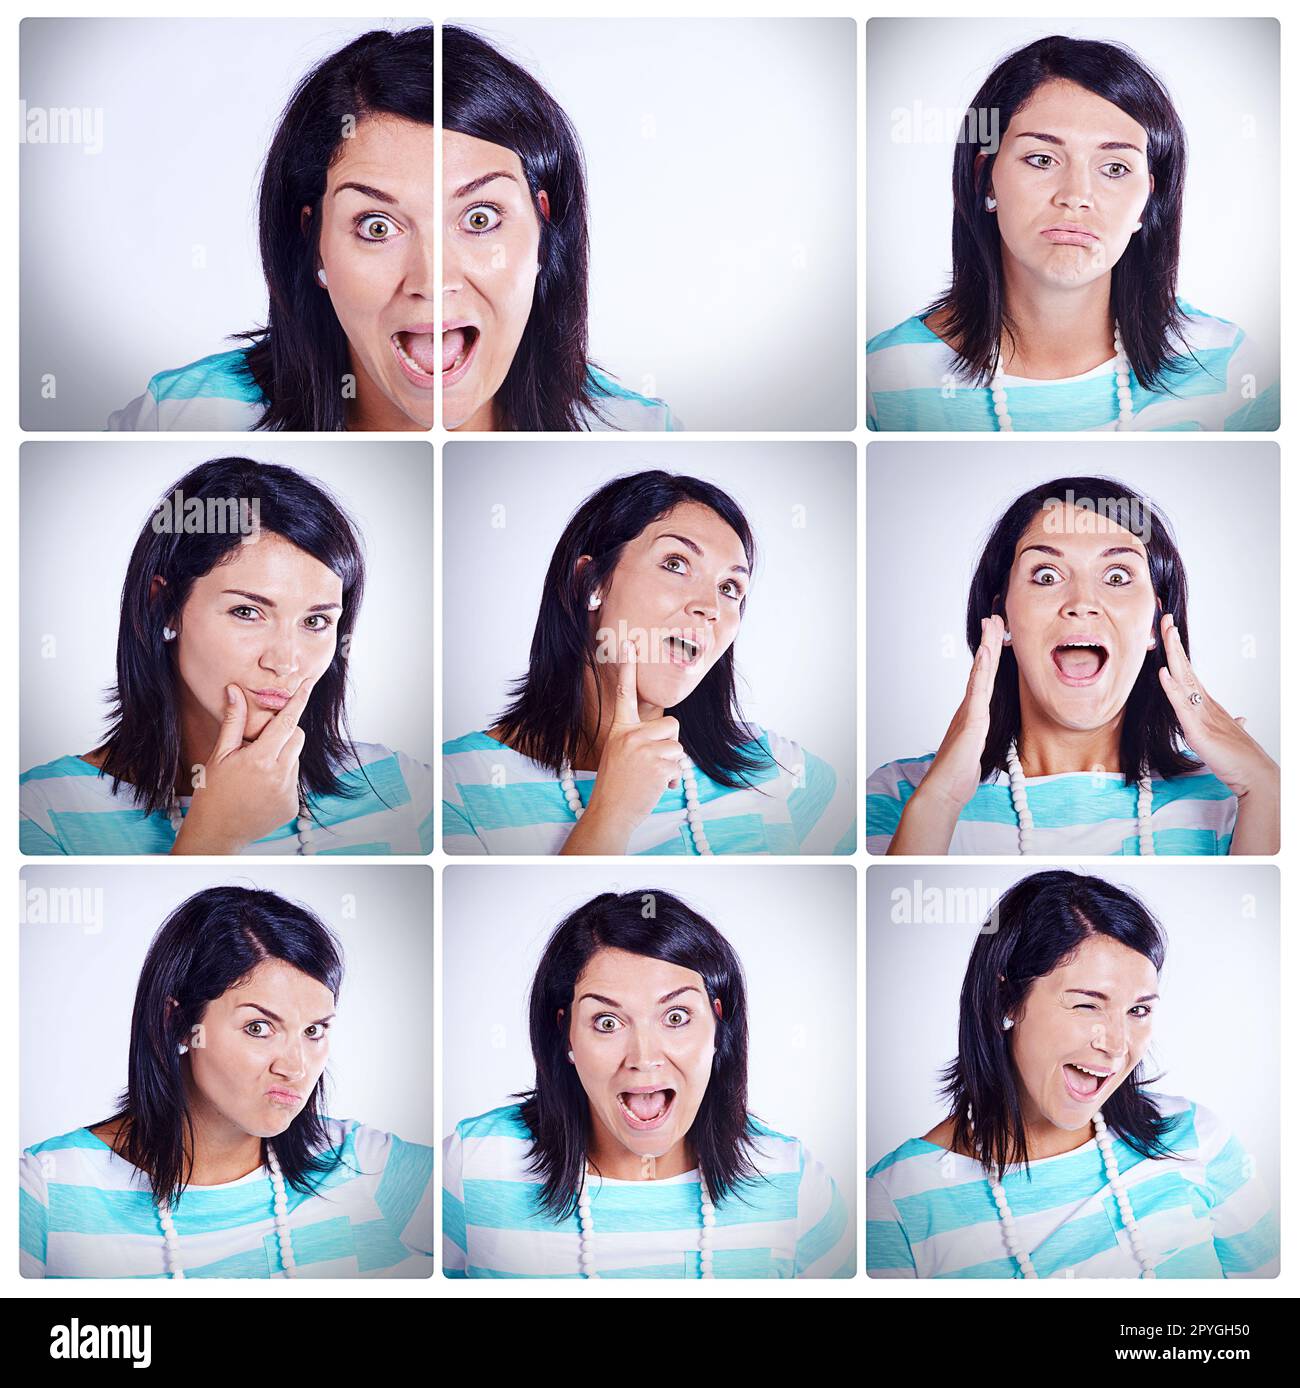 Schieß los., mach mein Gesicht. Kompositaufnahme einer Frau mit verschiedenen Gesichtsausdrücken. Stockfoto